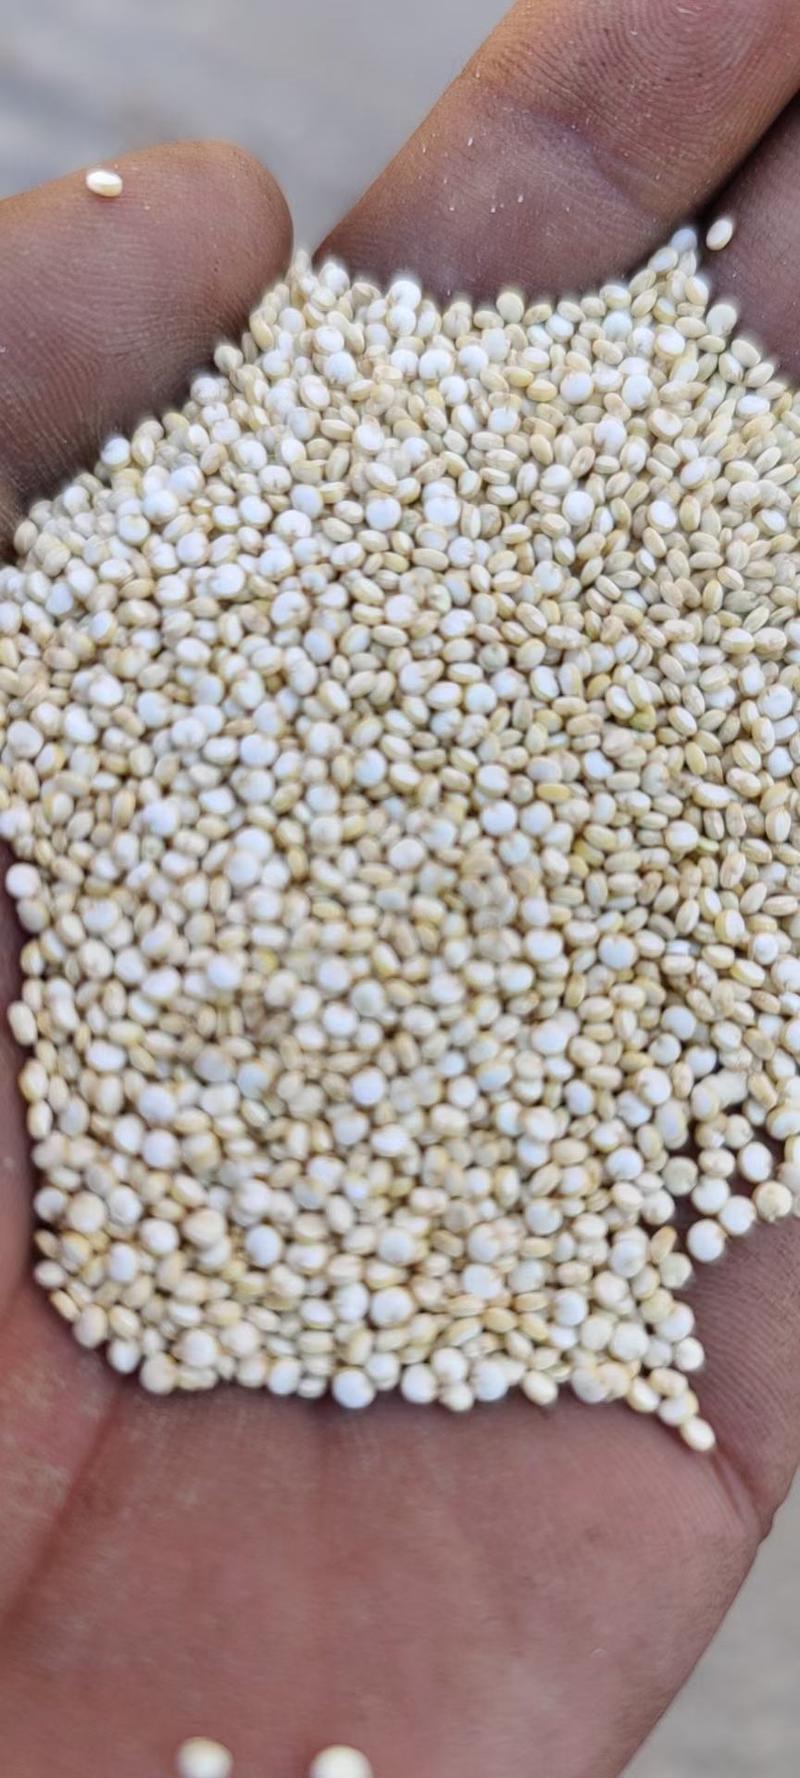 高原藜麦(基地直供)自产自销青海精品黎麦量大可以议价